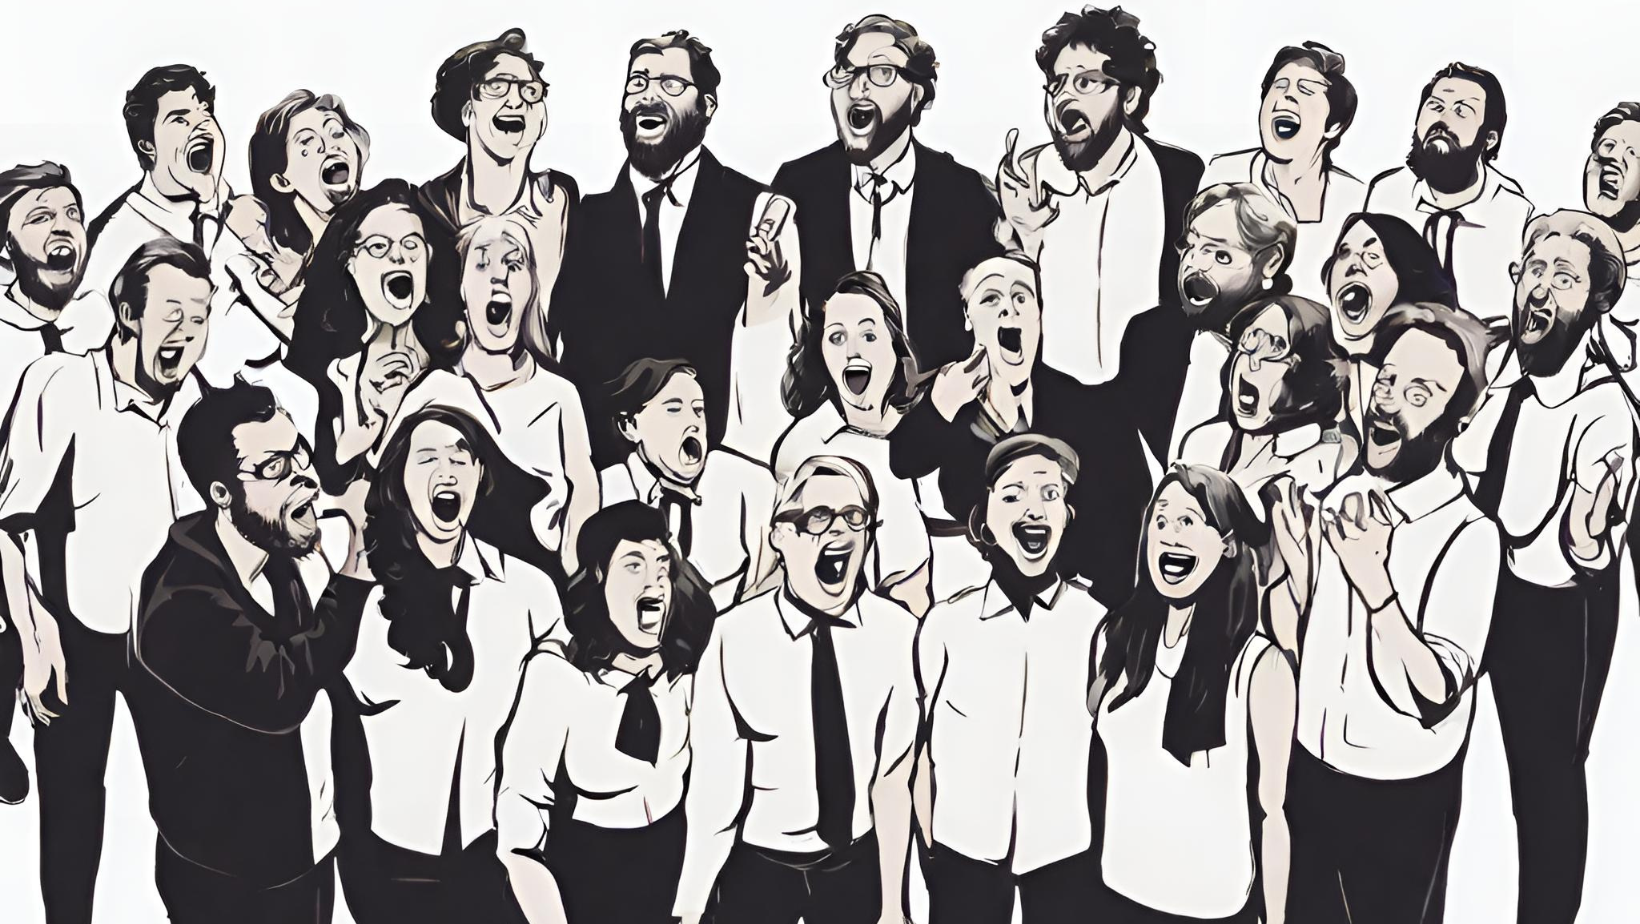 schwarz/weißes Animationsbild eines gemischt-geschlechtlichen Chores; alle Mitglieder haben den Mund singend geöffnet